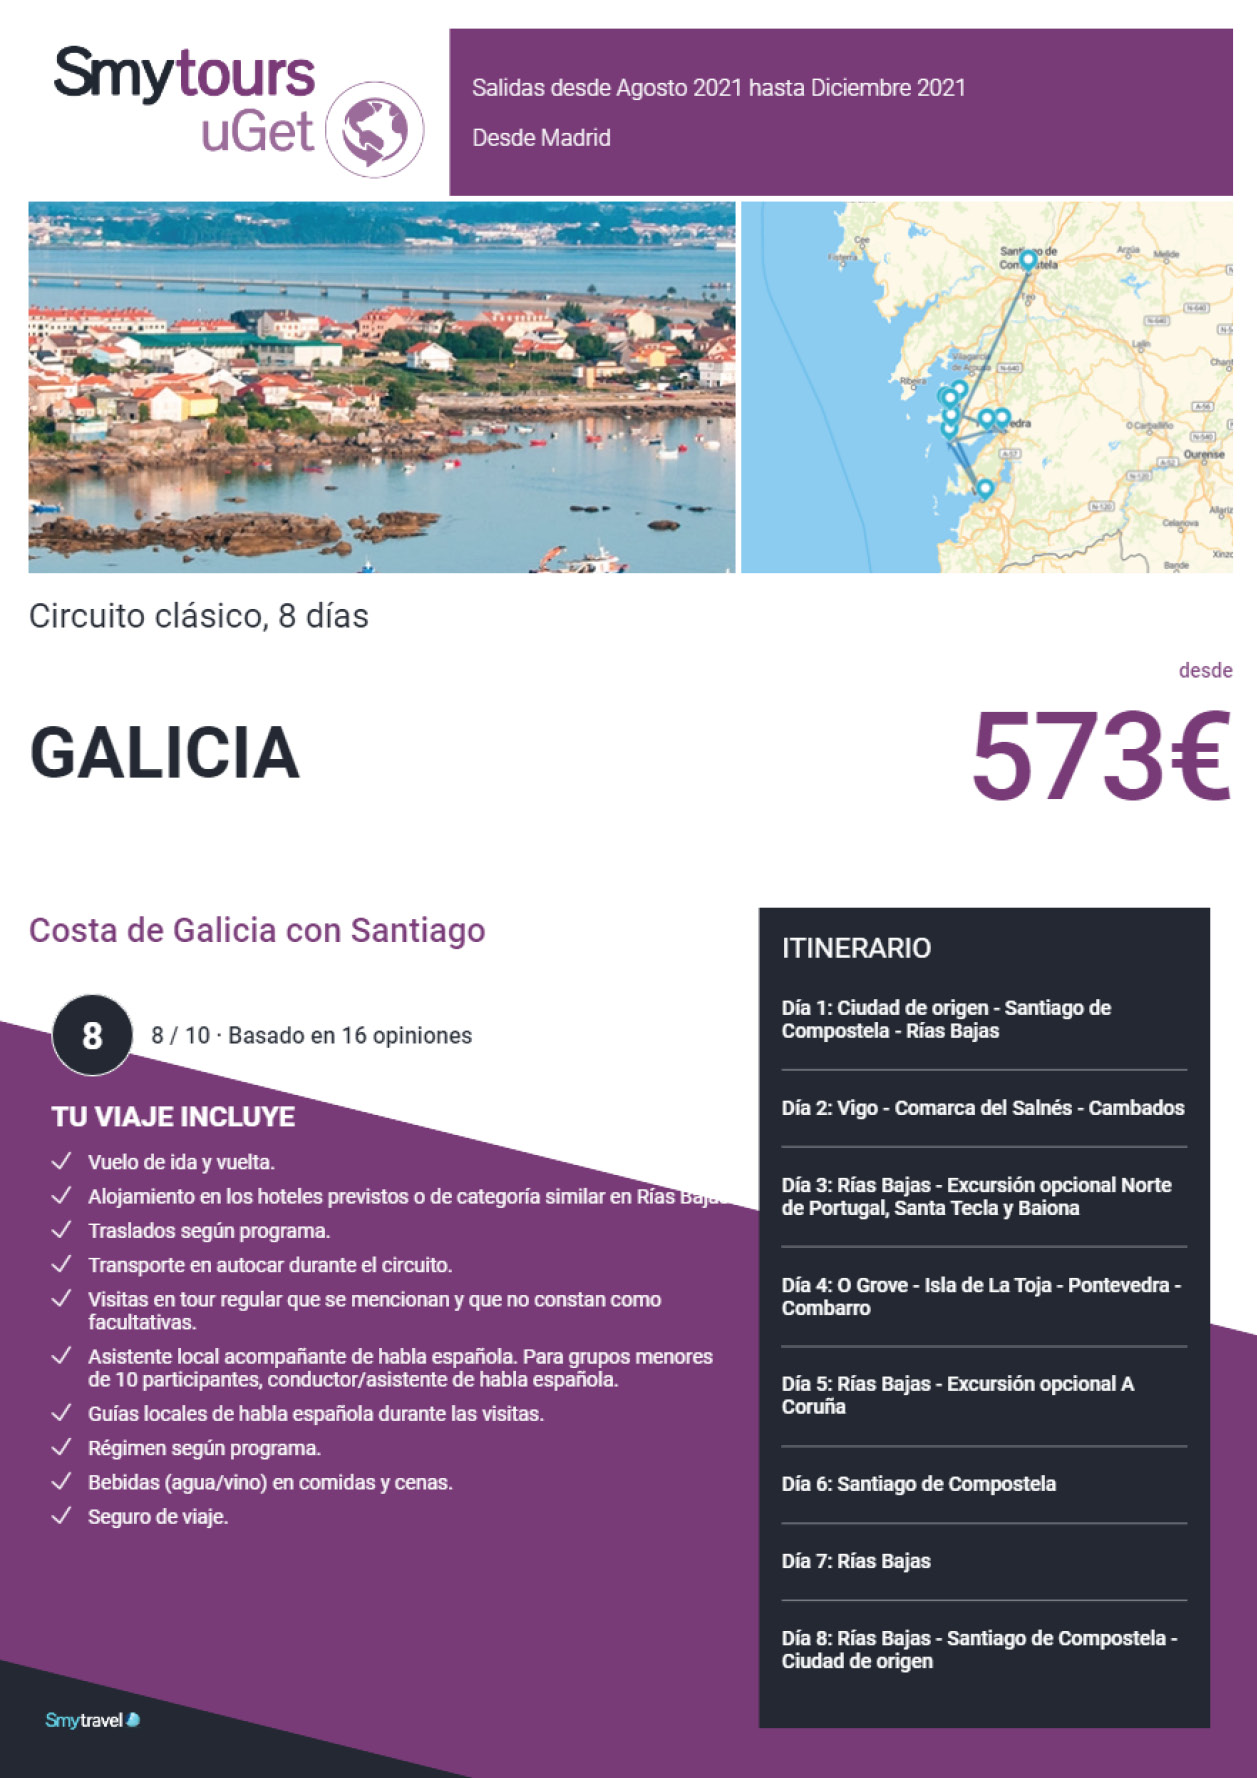 Oferta Smytravel Circuito Costa de Galicia con Santiago 8 dias salidas Madrid desde 573 €